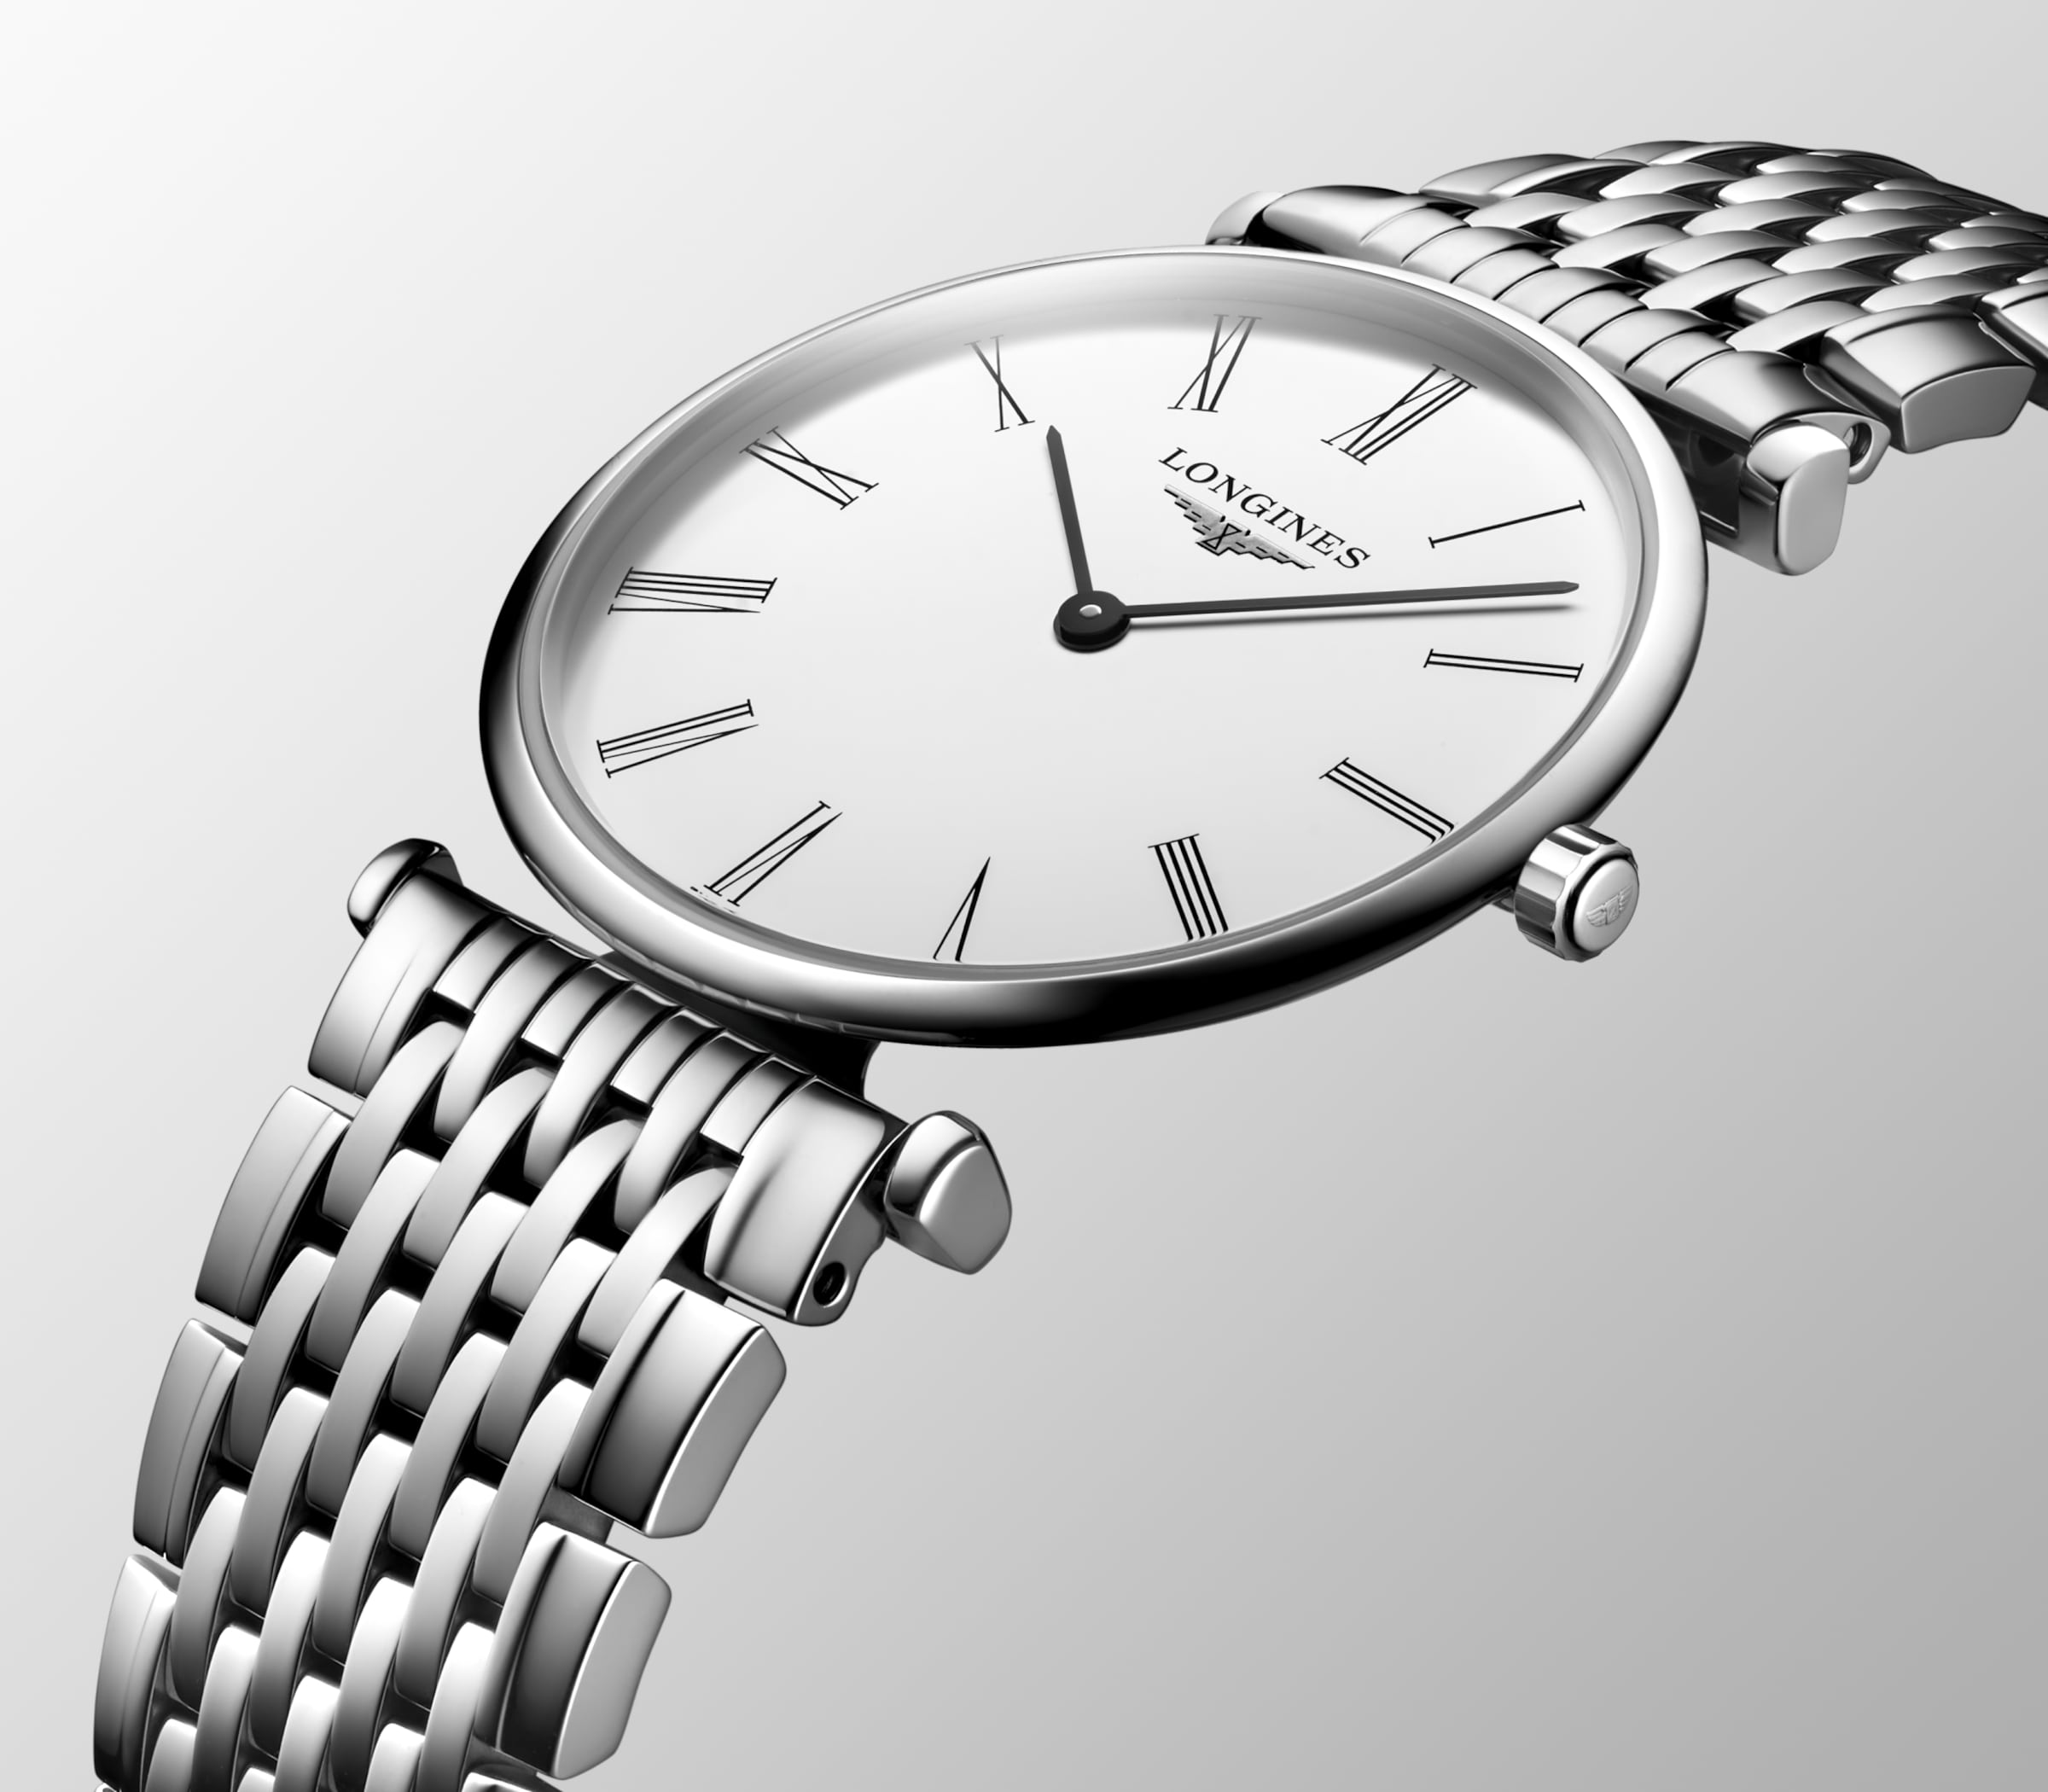 Longines LA GRANDE CLASSIQUE DE LONGINES Quartz Stainless steel Watch - L4.512.4.11.6